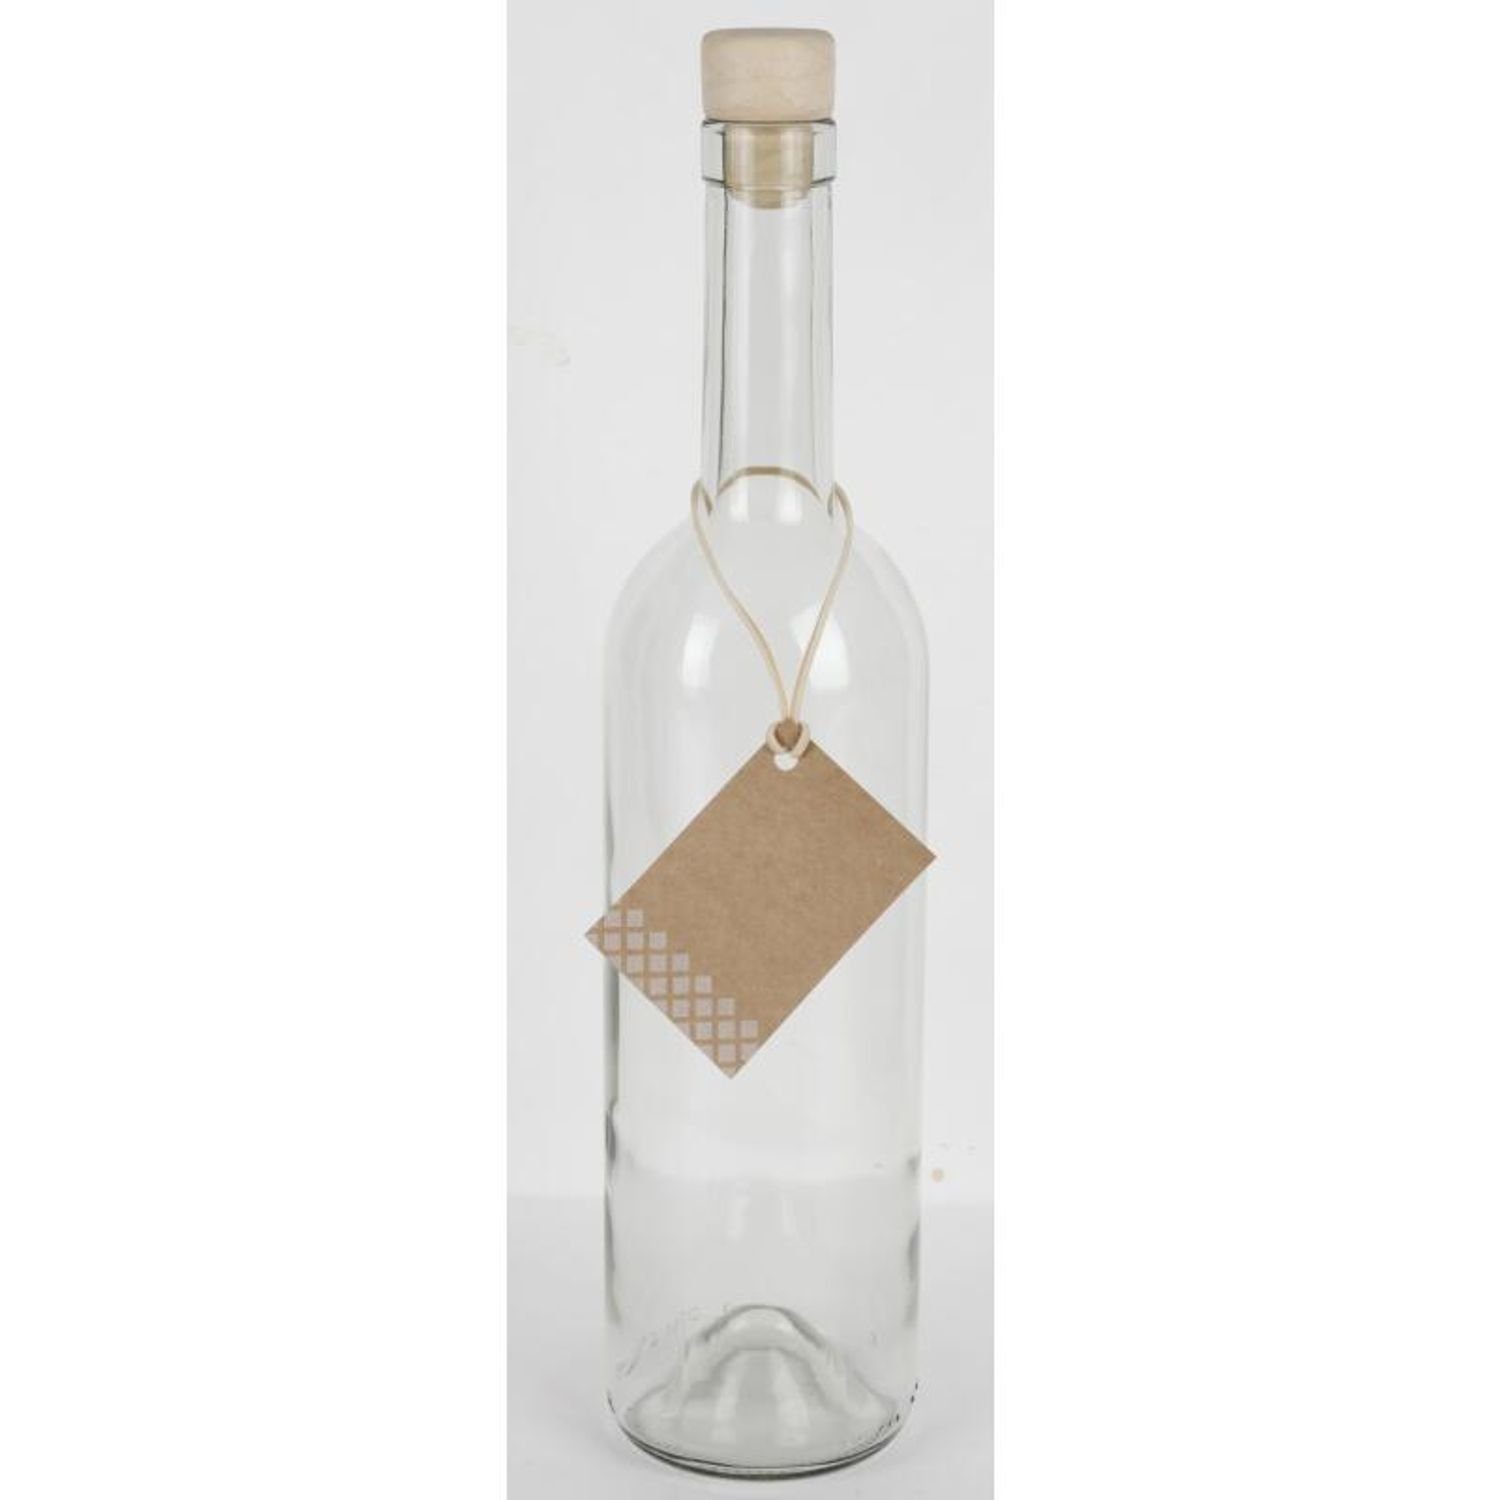 Omega Saft Trinken Küc Etikett Korkenverschluss 15x Wasser 0,75L Spolka Glasflasche Trinkflasche Jawna